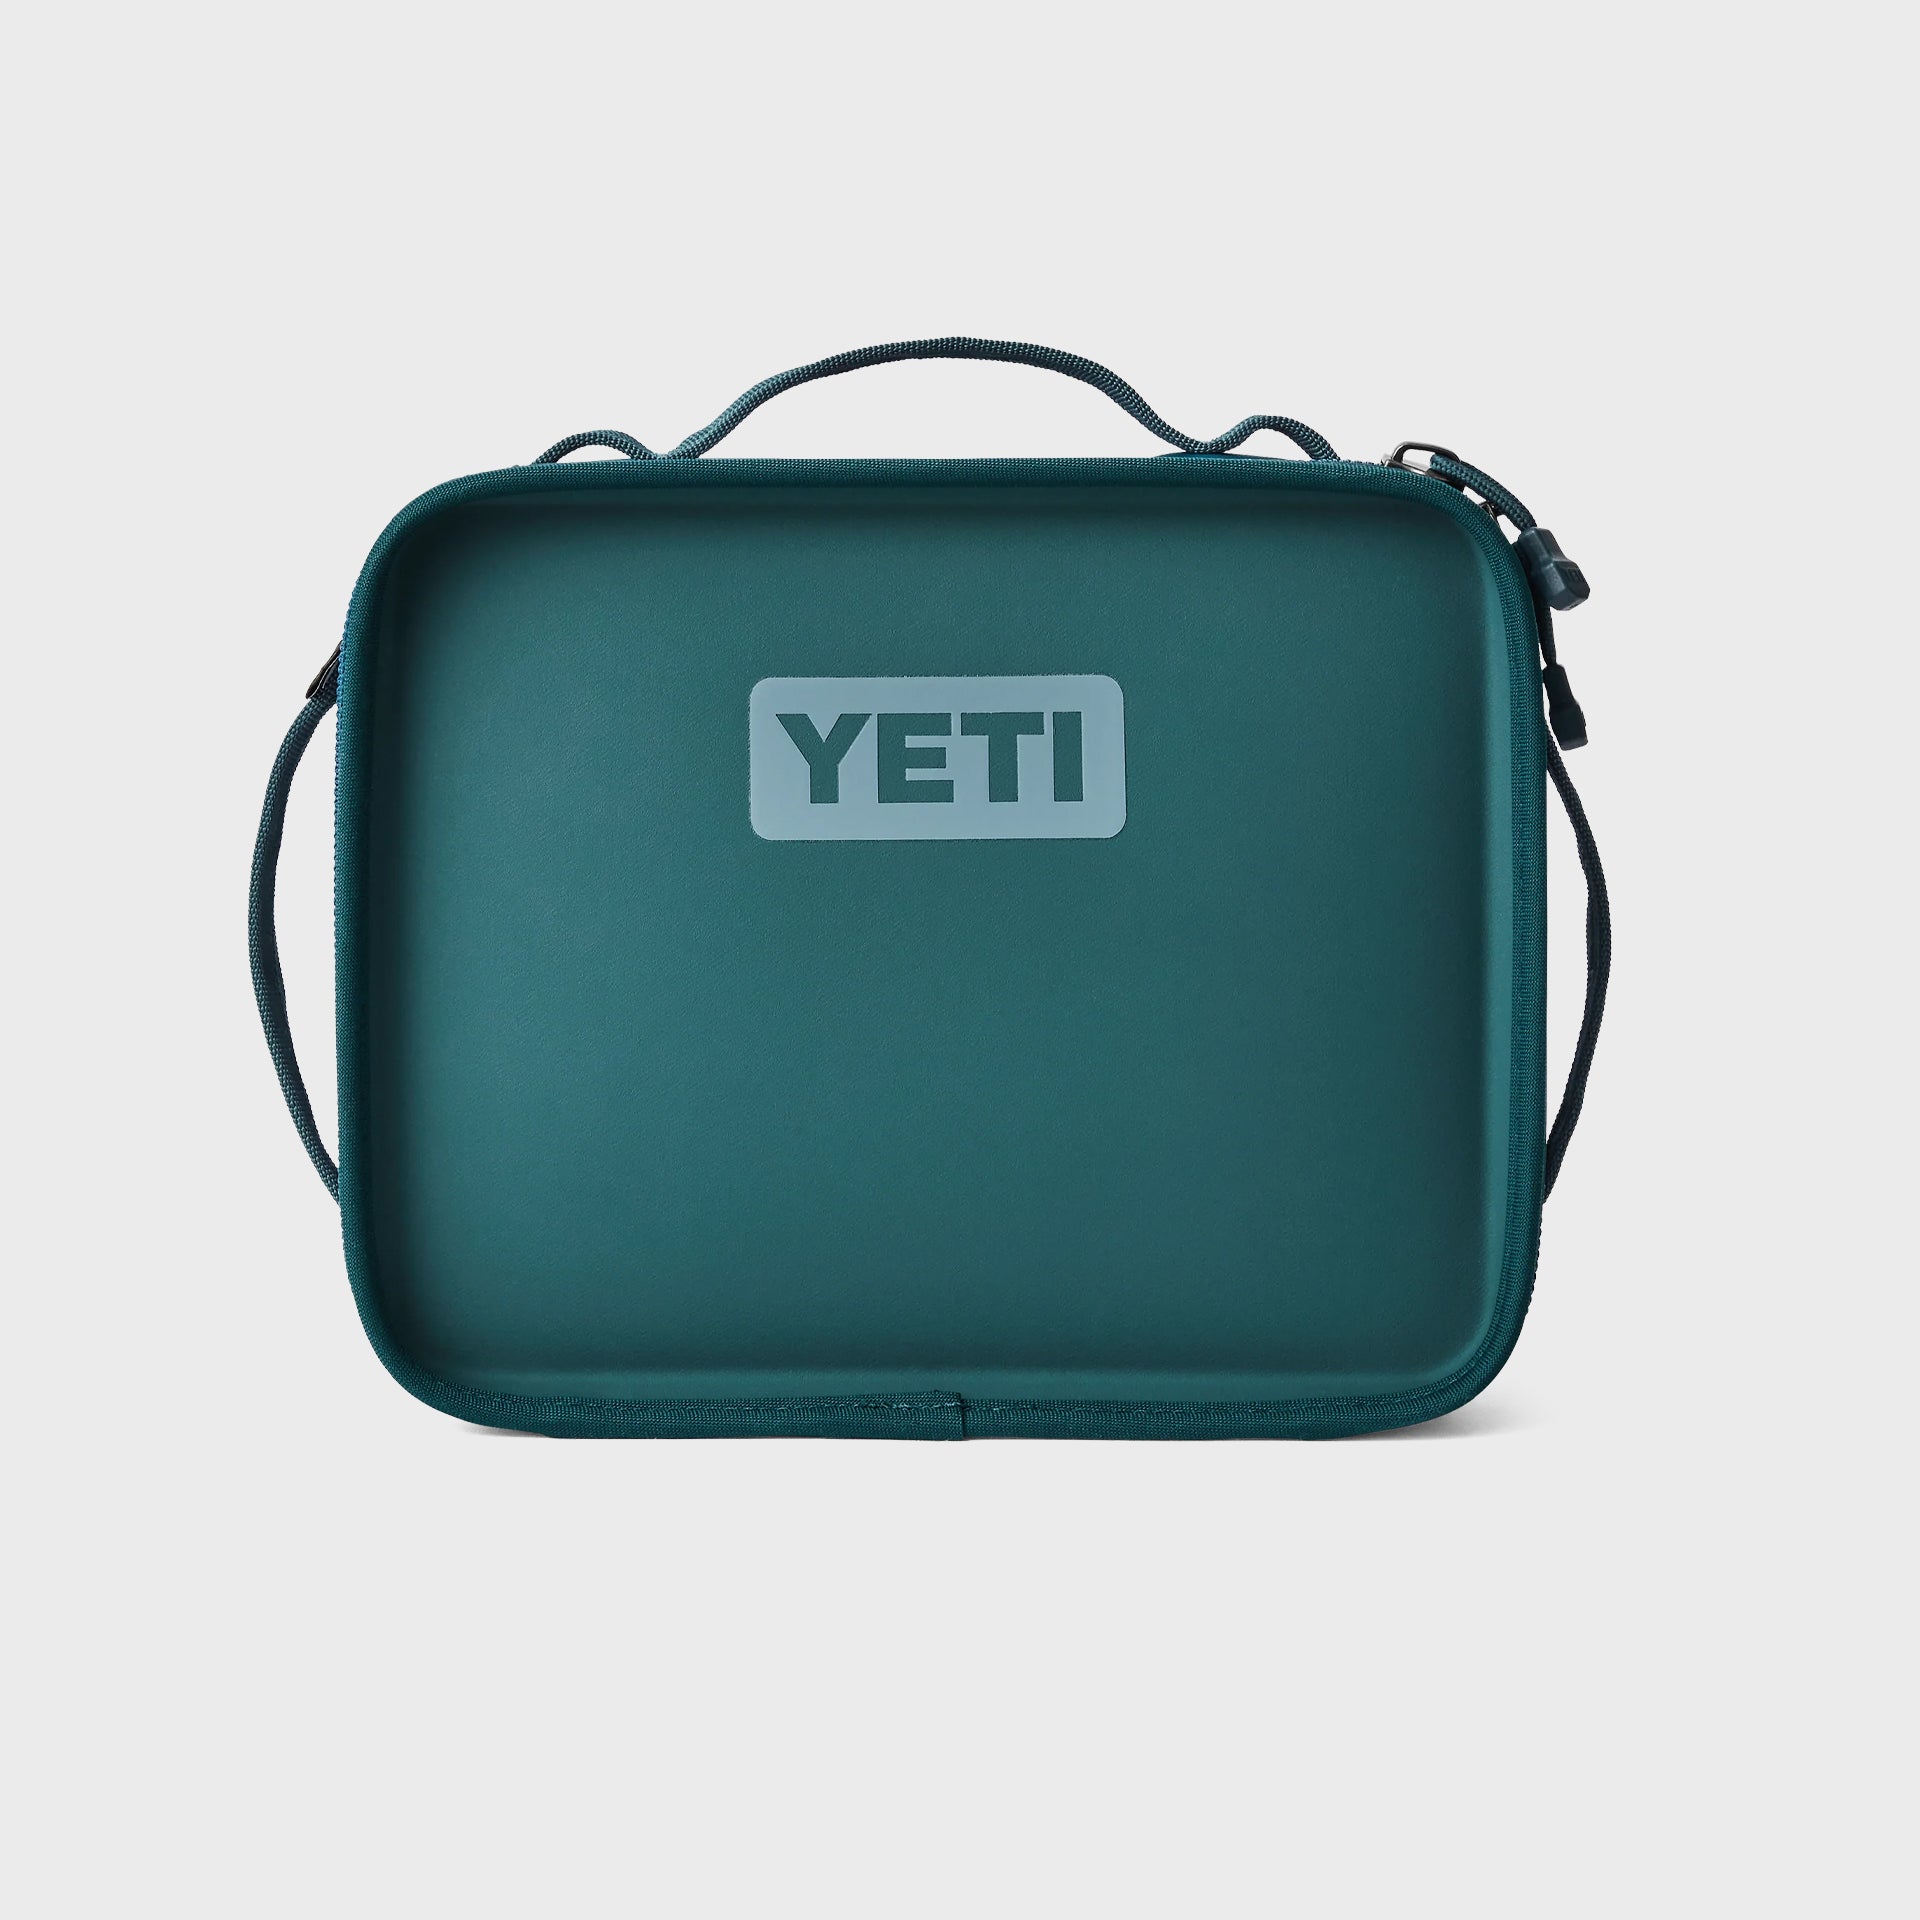 Yeti Daytrip Lunch Box - Agave Teal - ManGo Surfing